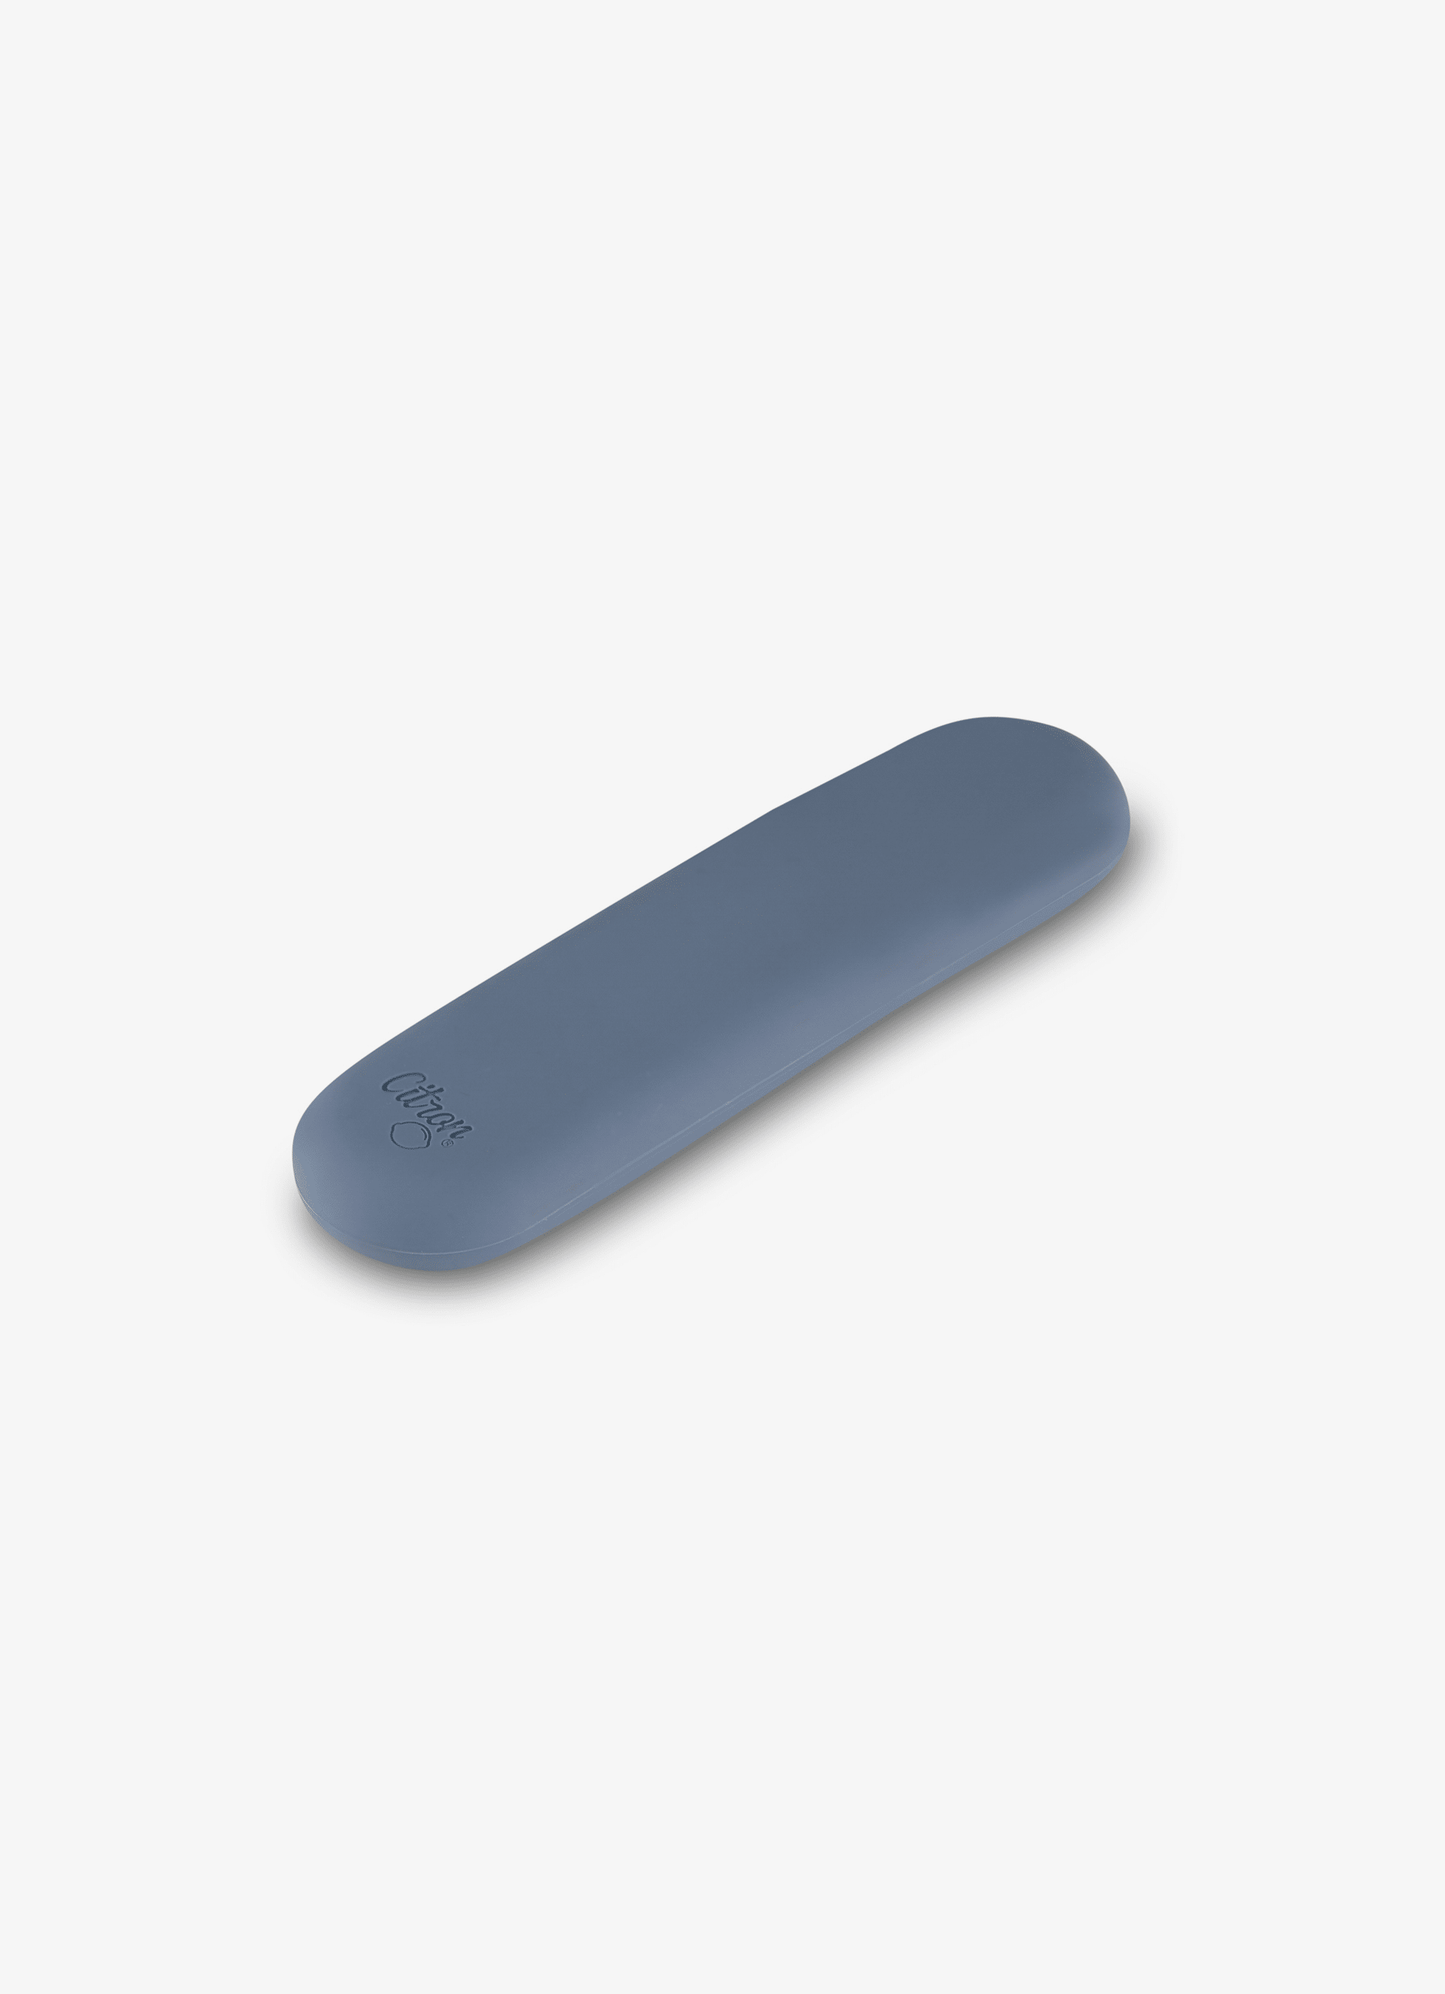 مجموعة أدوات المائدة - أزرق غامق